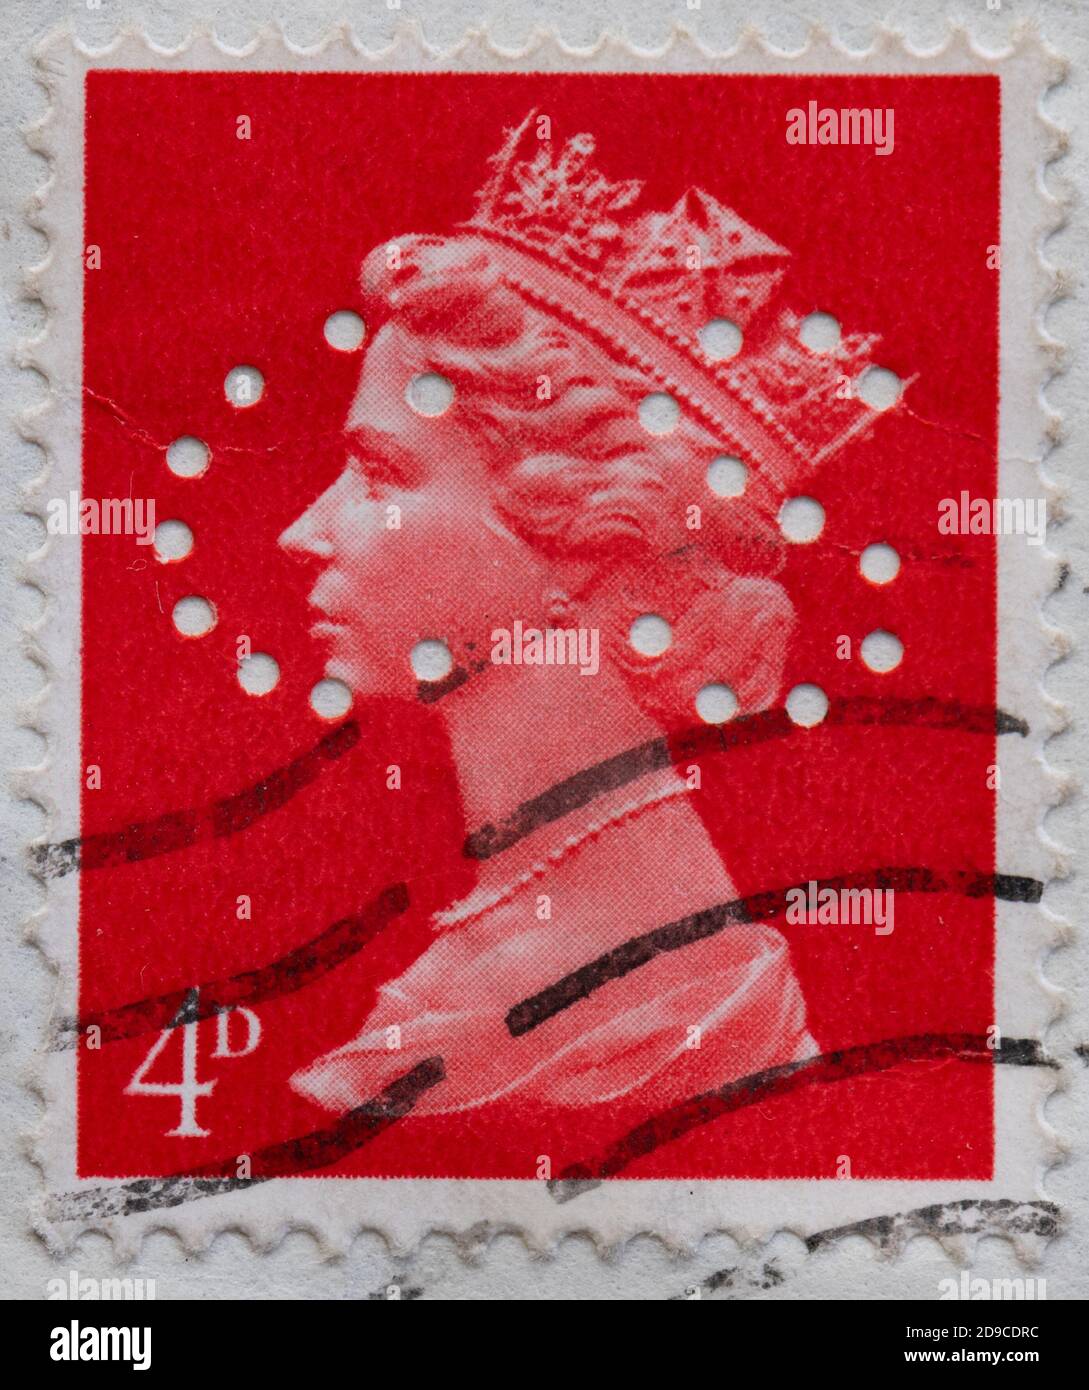 Perfin - perforierte Initialen 'C.S' auf Queen Elizabeth II 4d Briefmarke Stockfoto